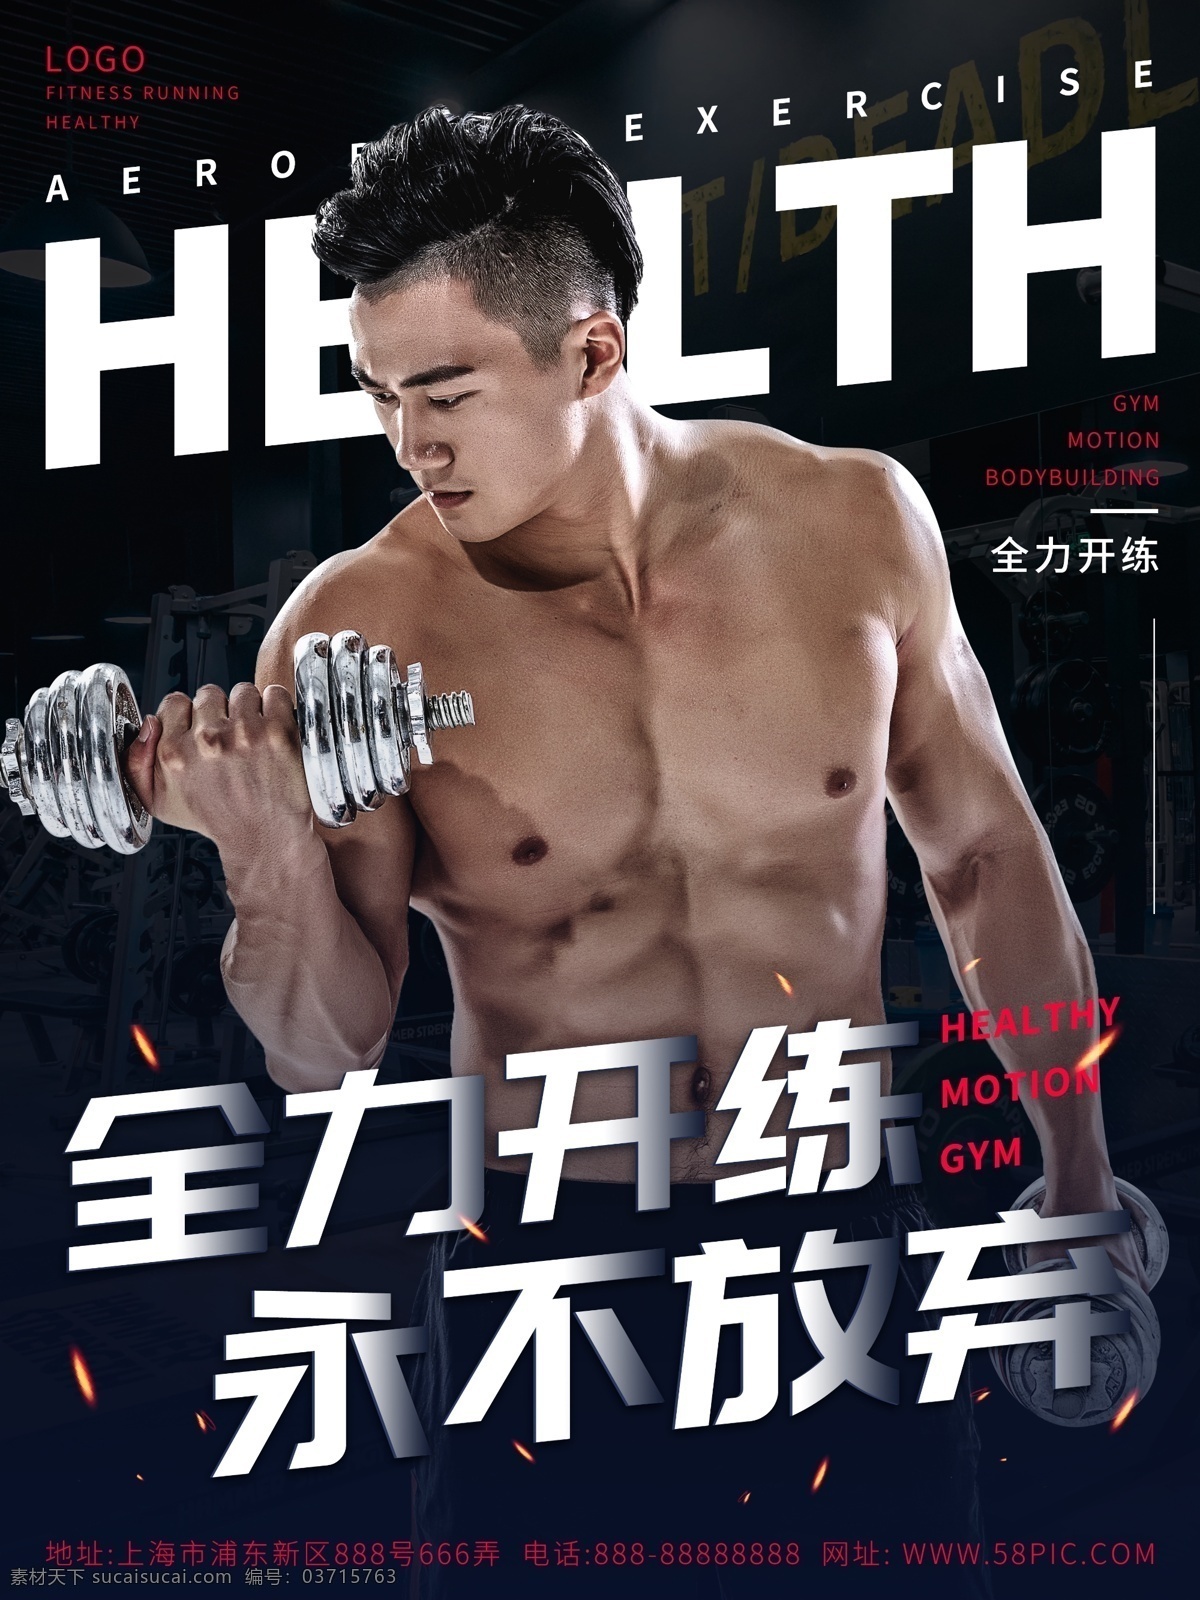 简约 时尚运动 健身 海报 运动健身 健身海报 哑铃 肌肉 健身房 健美 商业海报